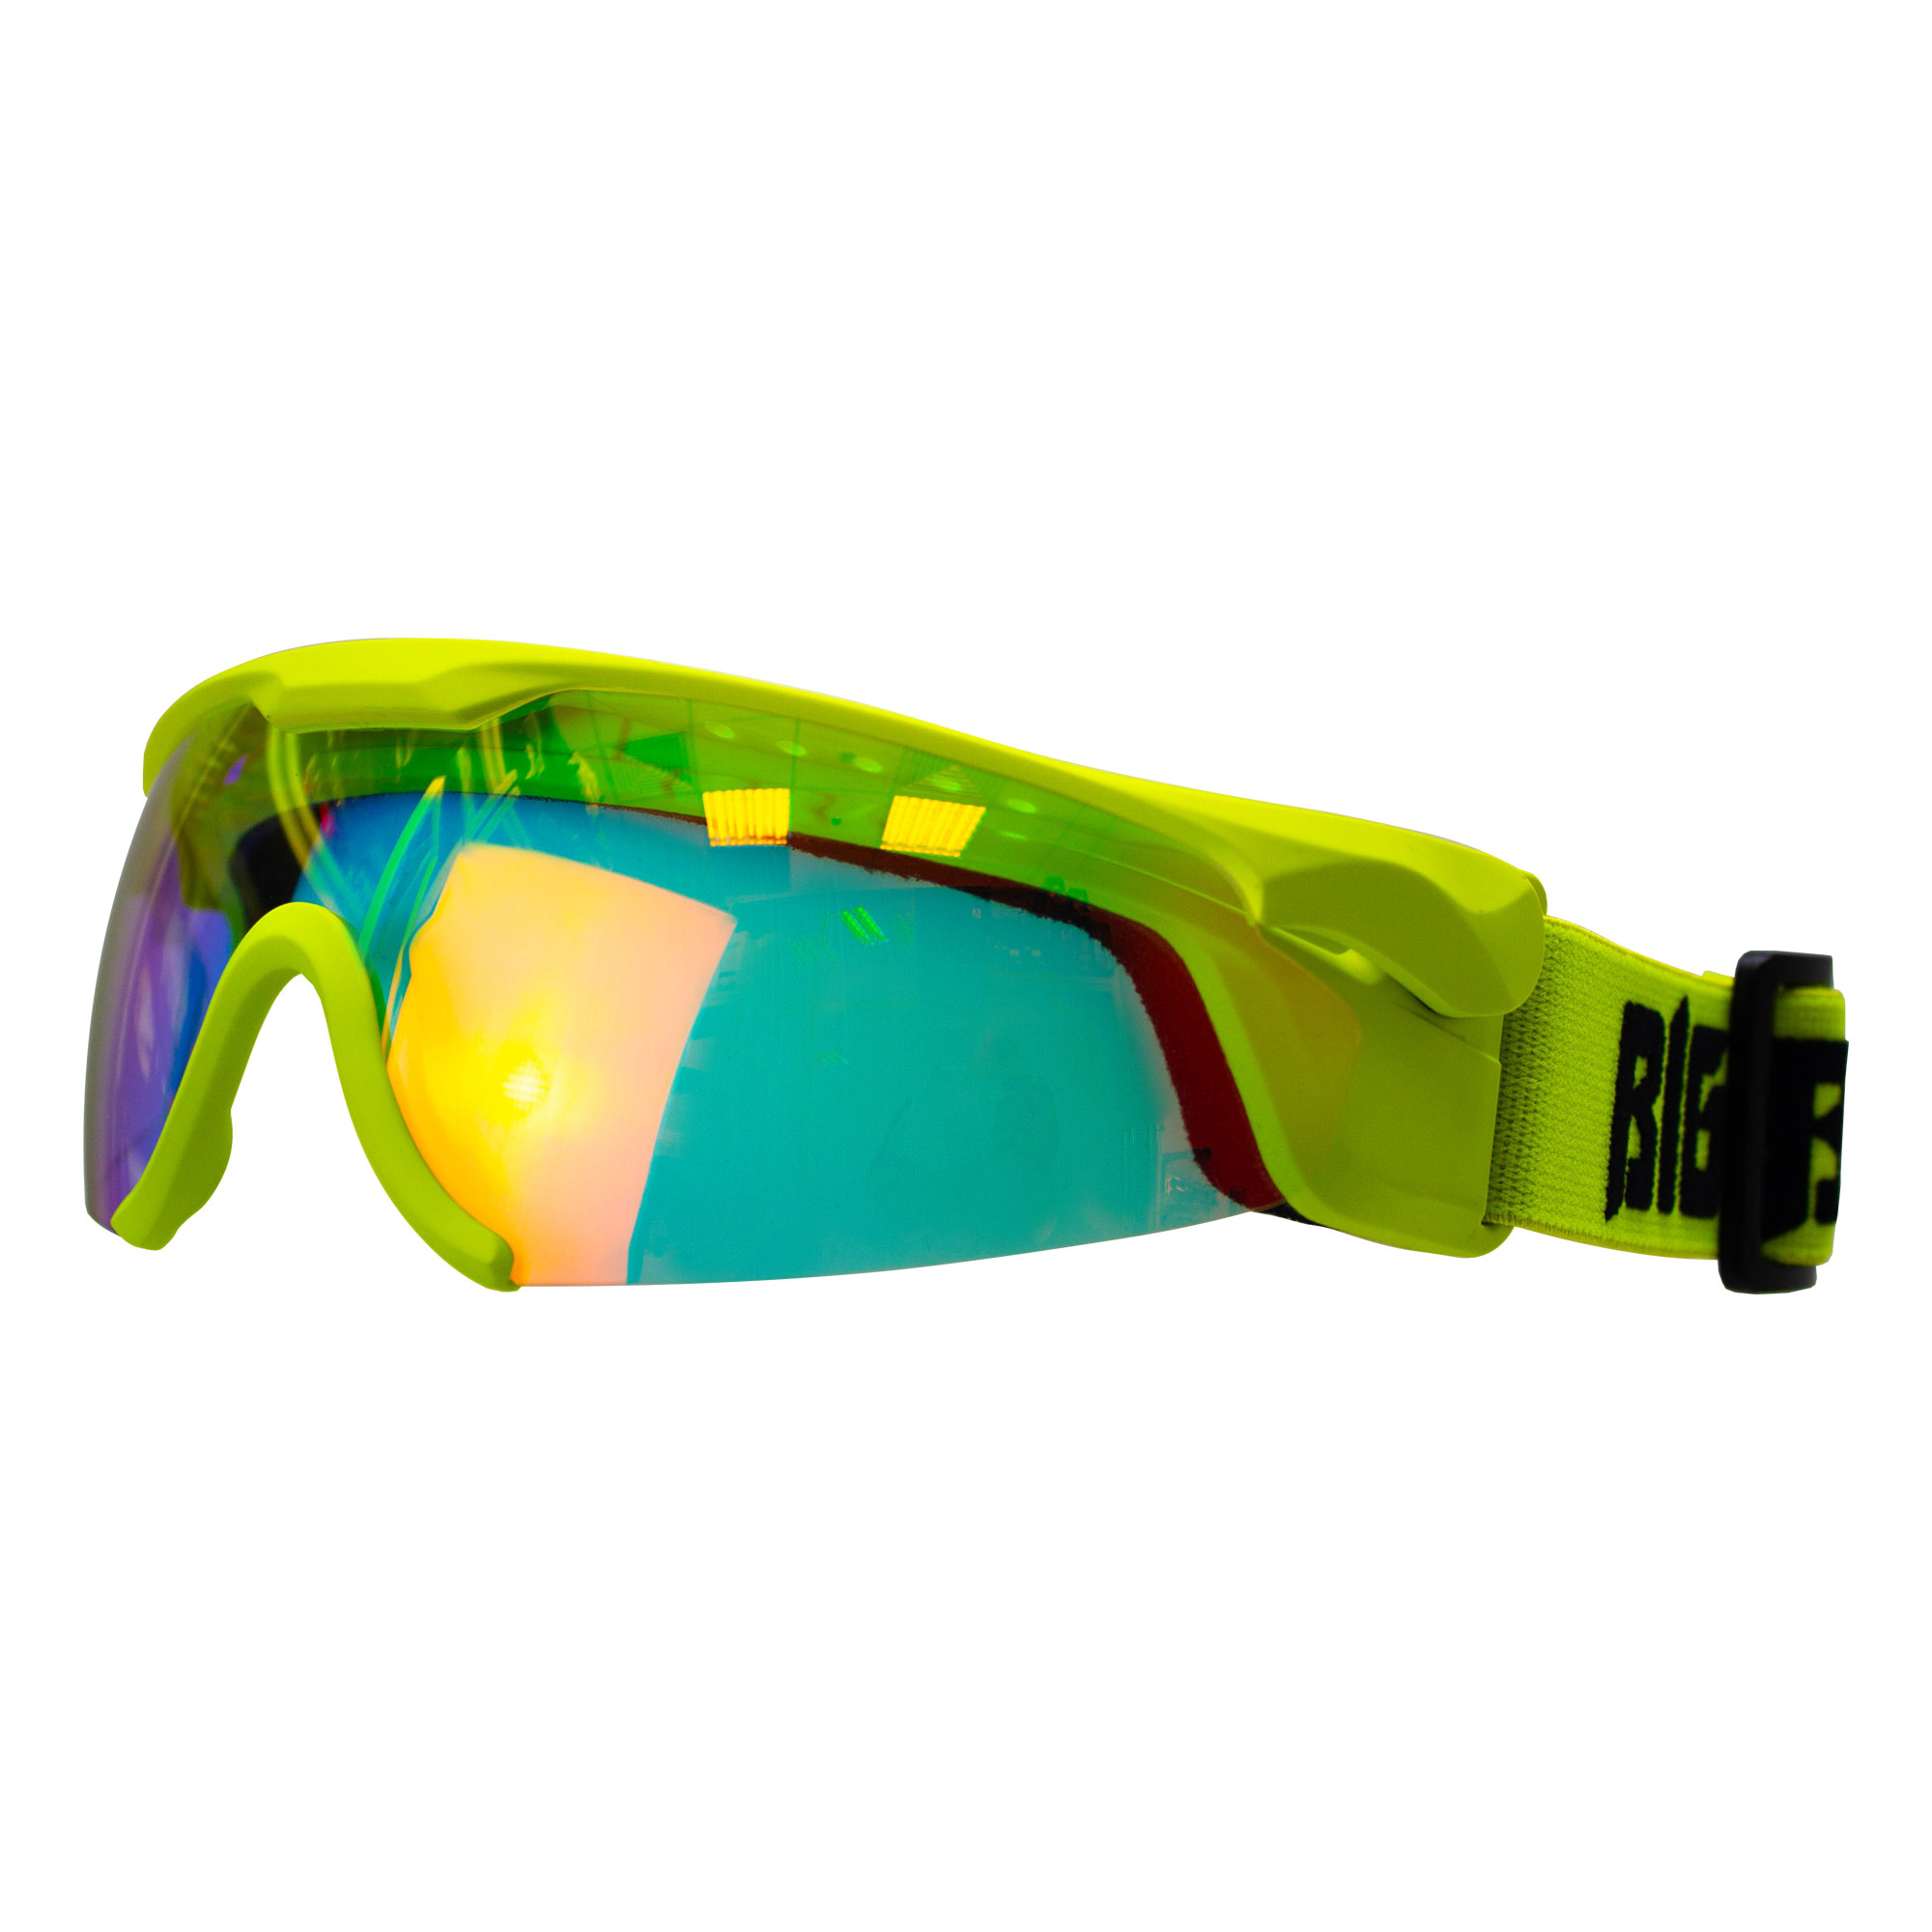 Очки для беговых лыж Big Bro Y65 Green